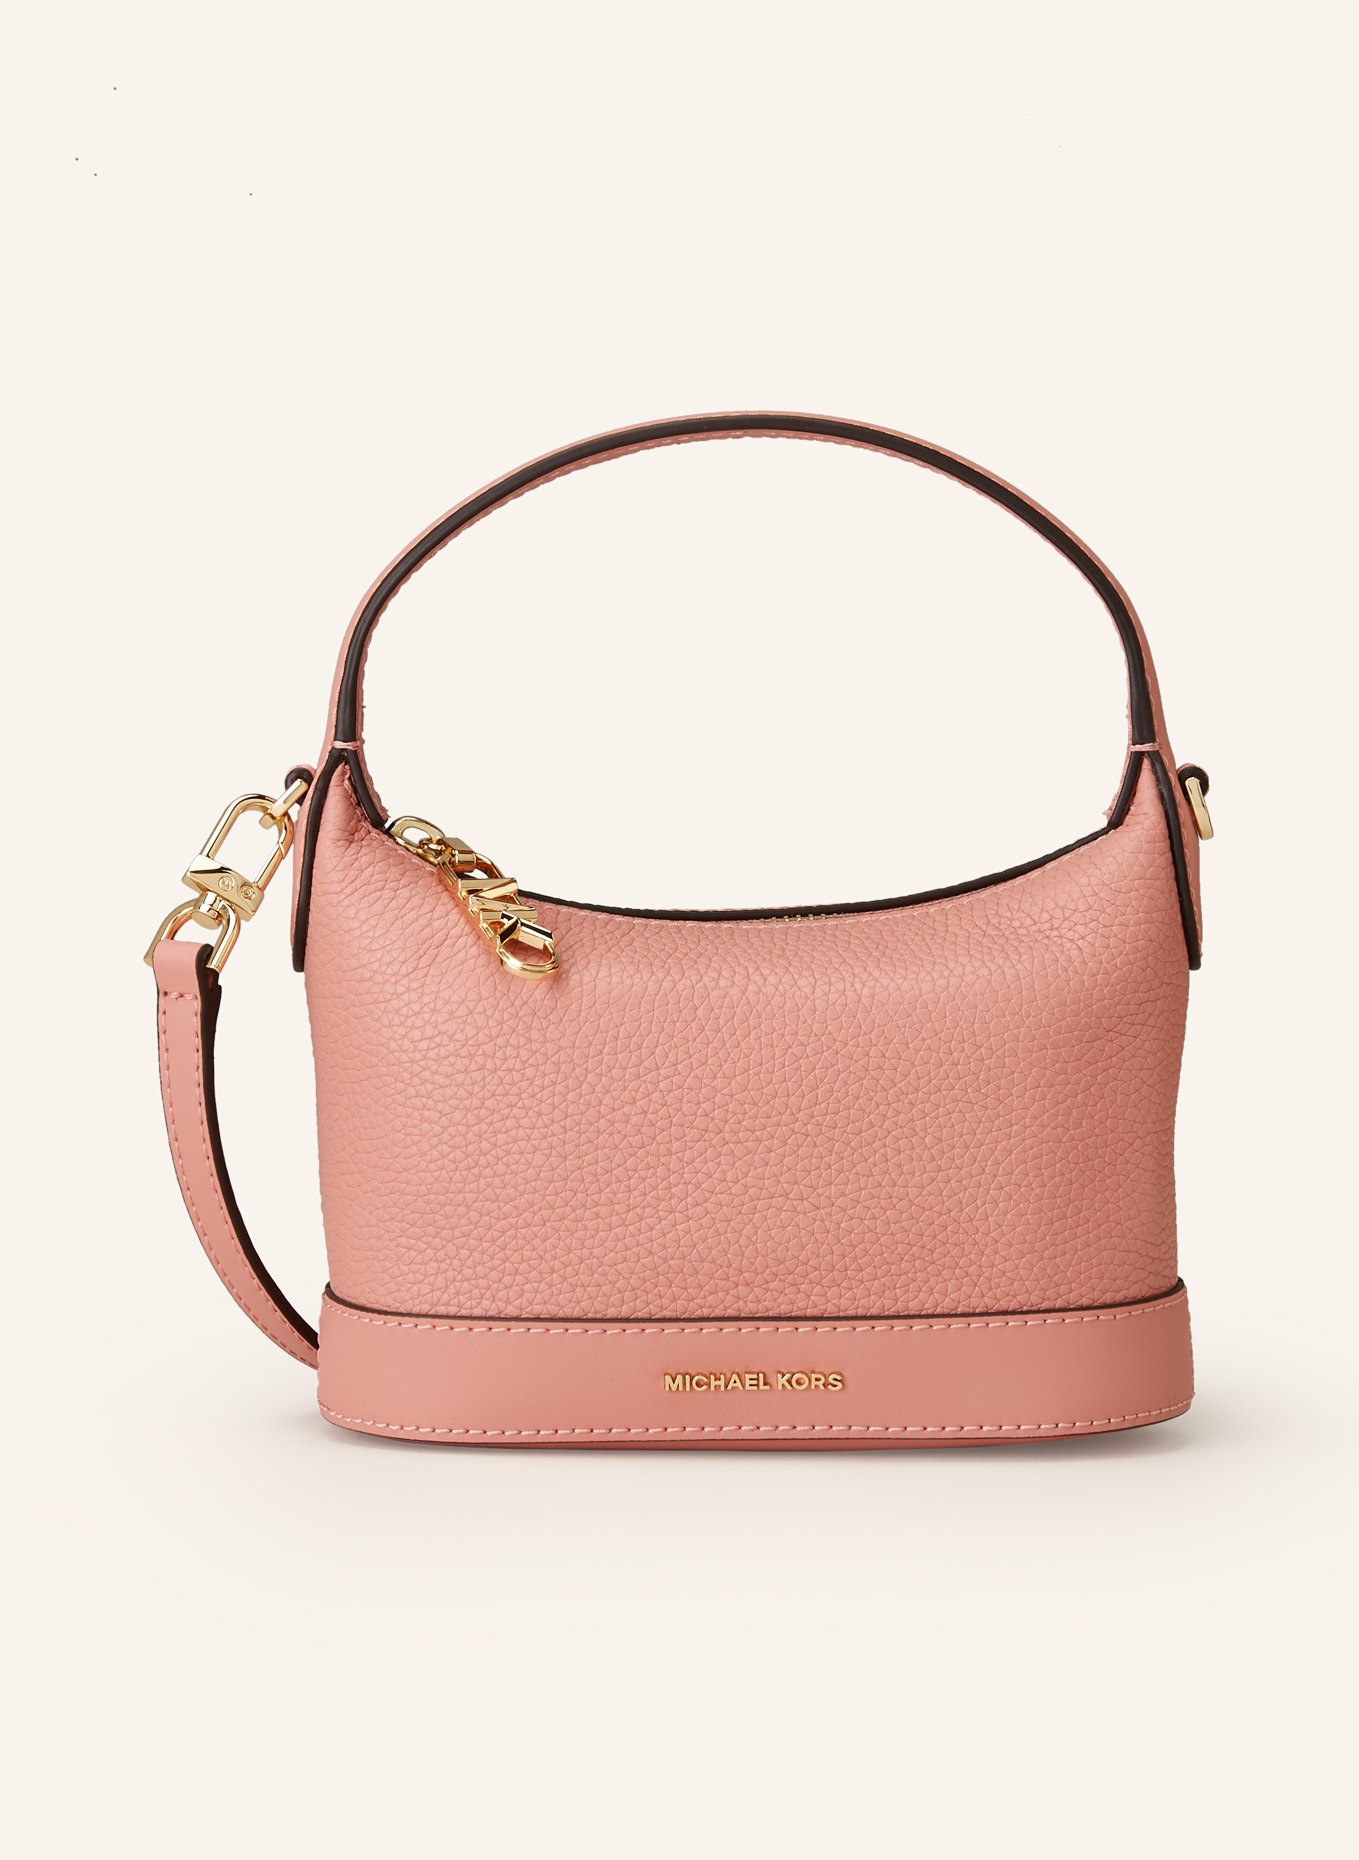 MICHAEL KORS Handbag WYTHE, Color: 689 Sunset Rose (Image 1)